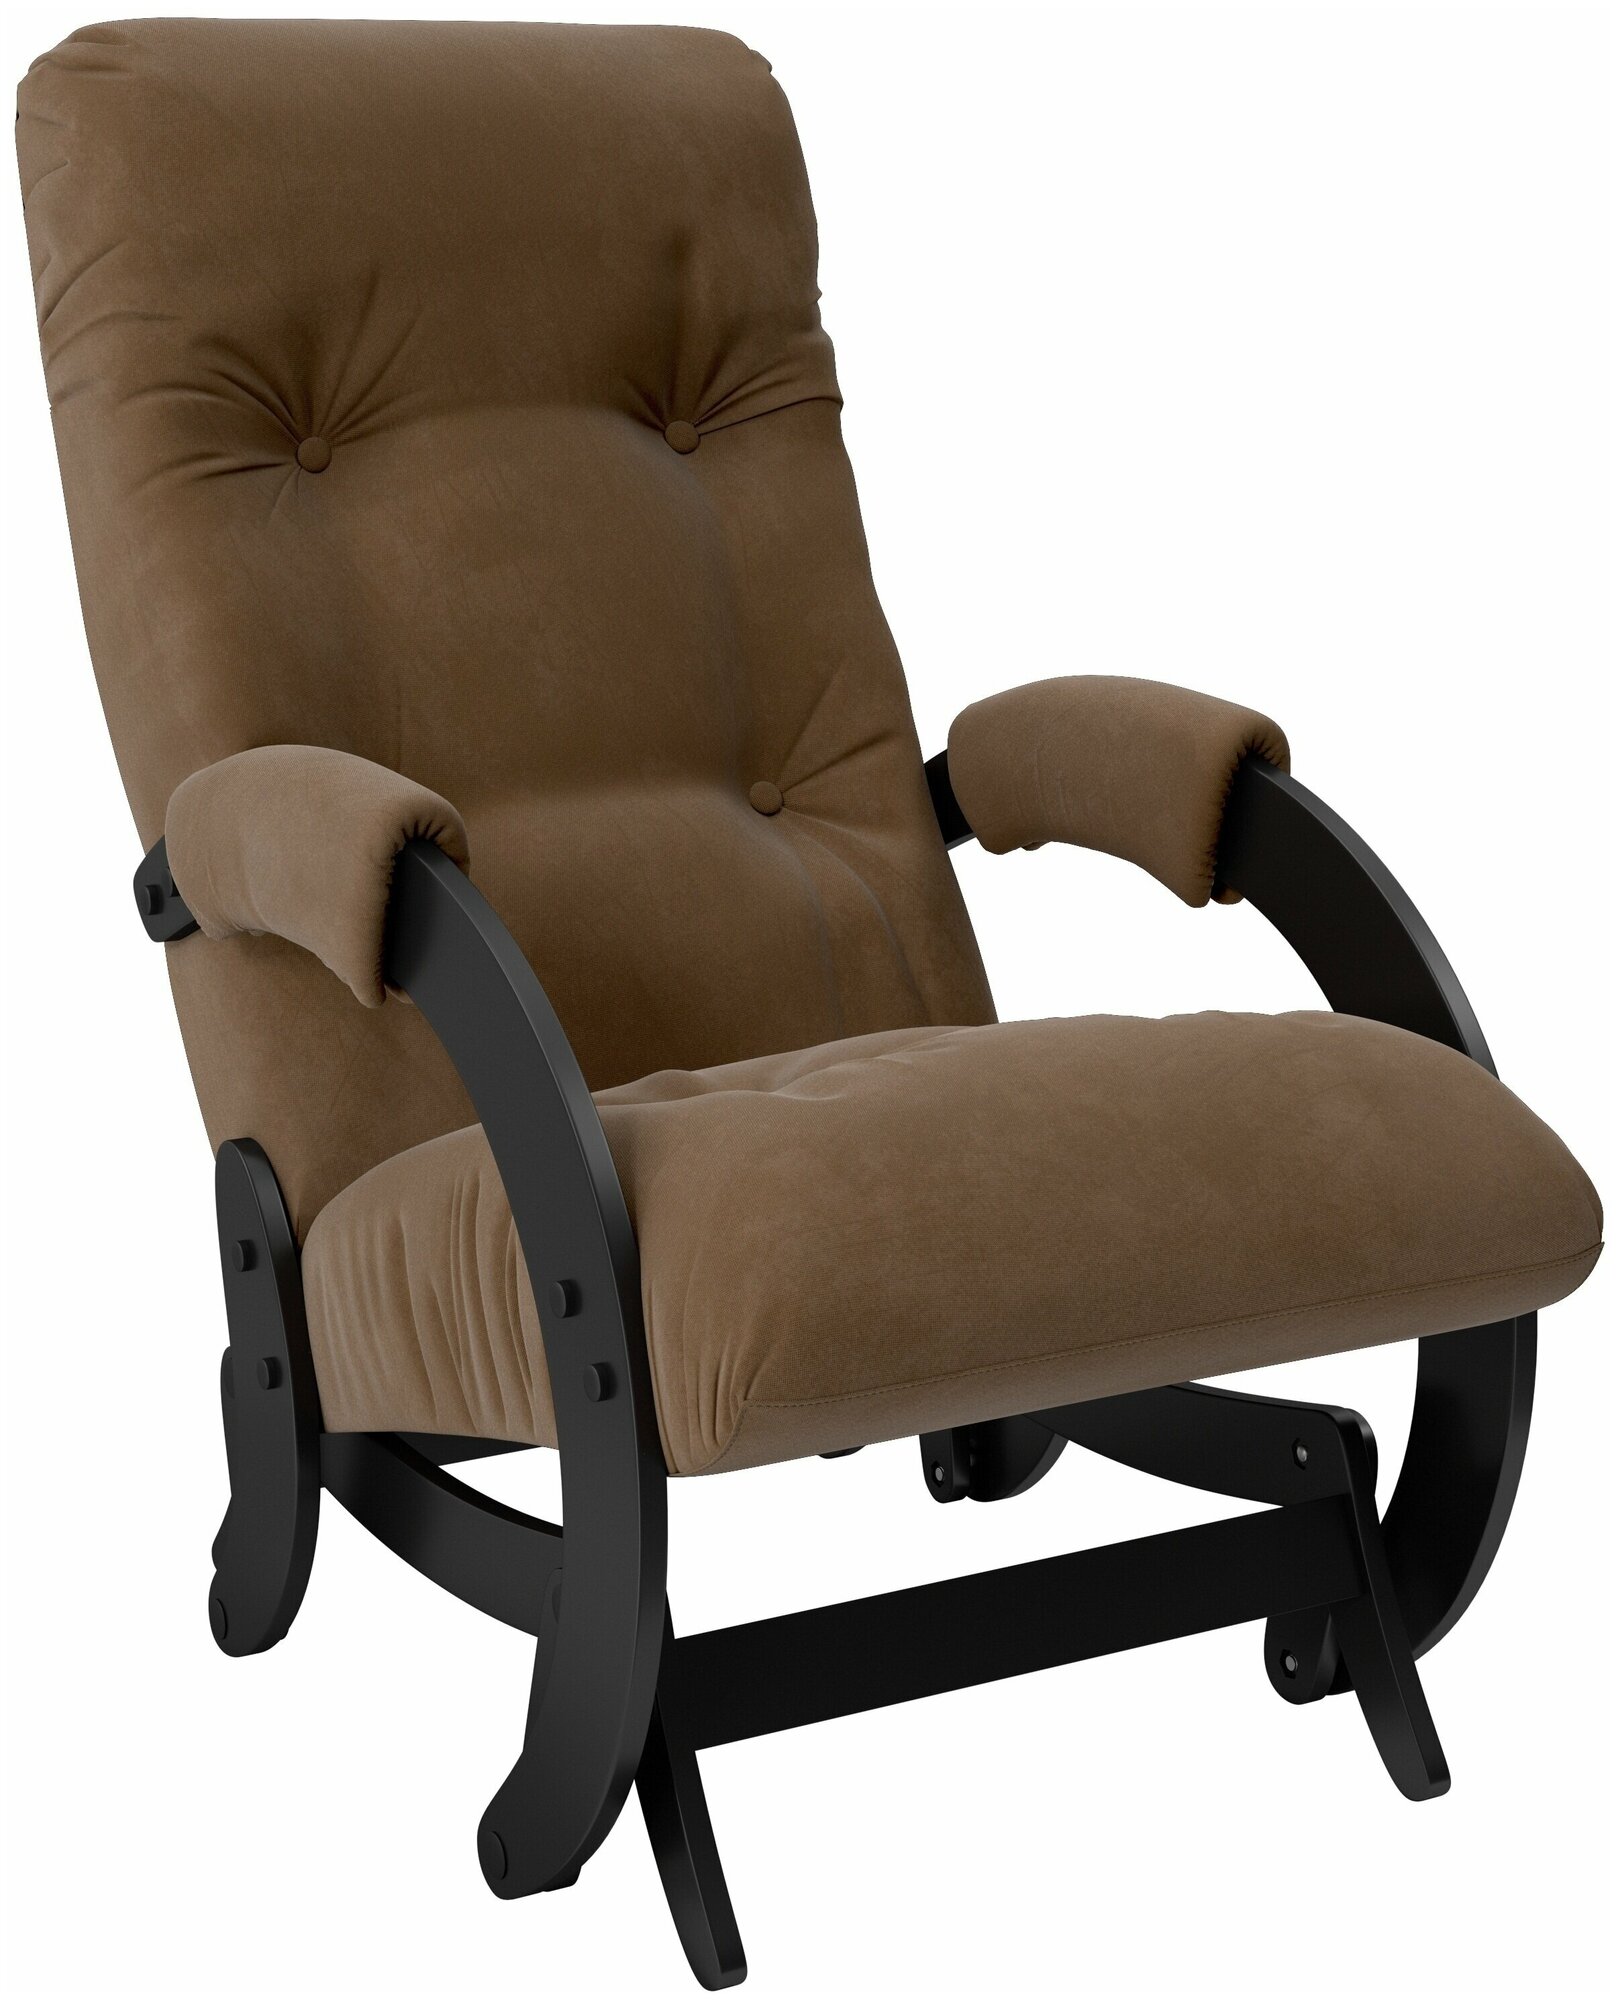 Кресло-качалка глайдер-маятник Консул (Модель 68) Венге ткань Verona brown (велюр)